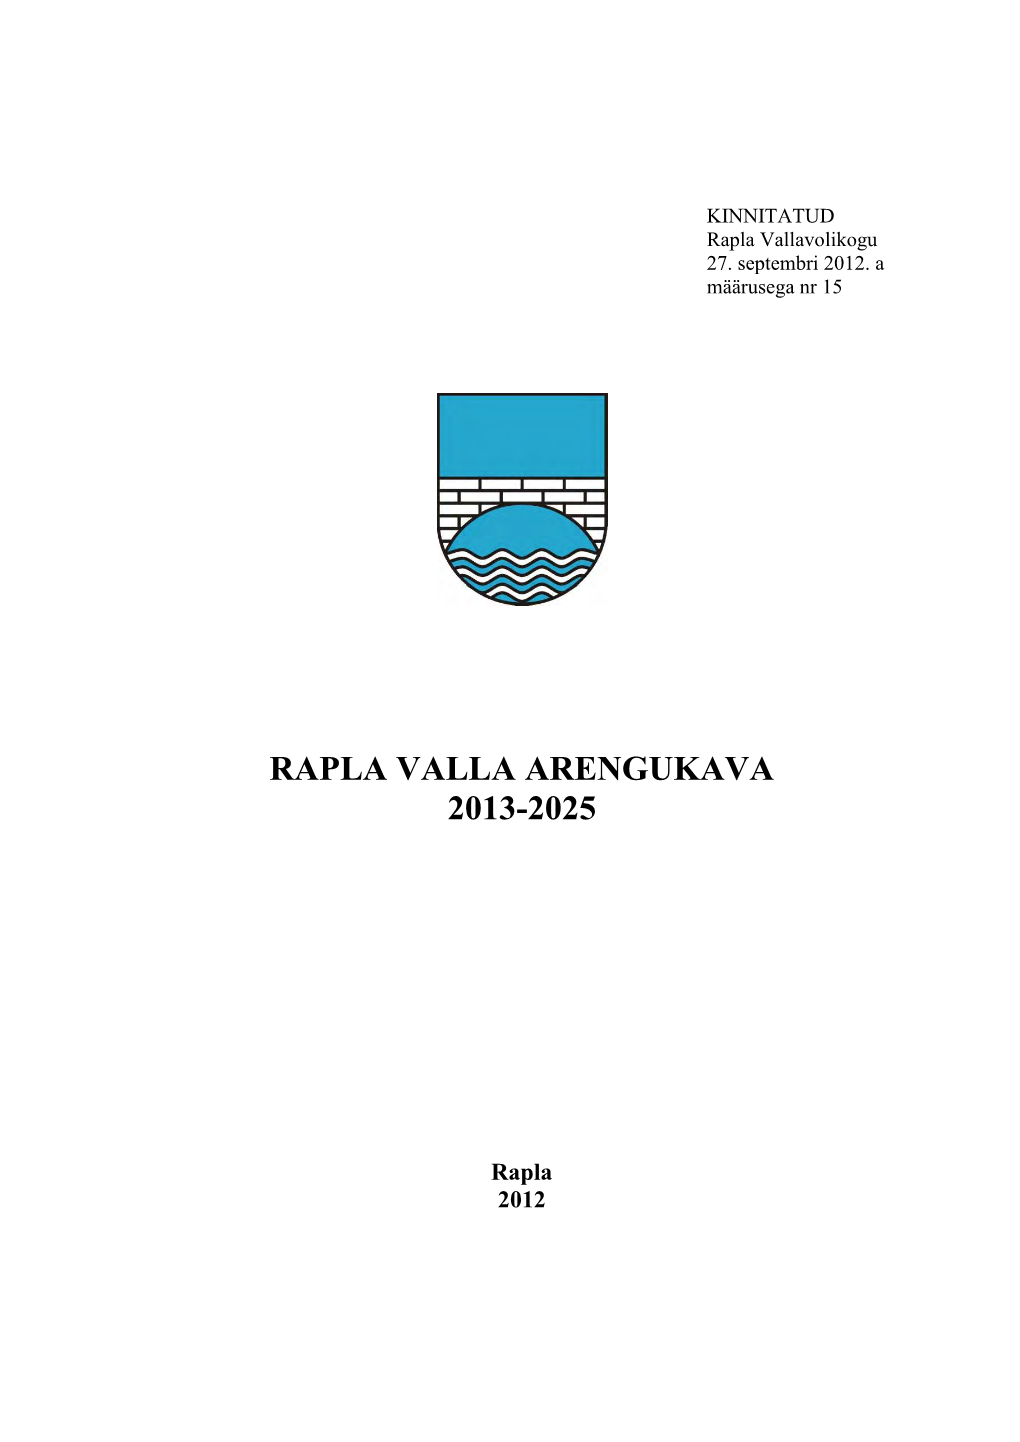 Rapla Valla Arengukava 2013-2025